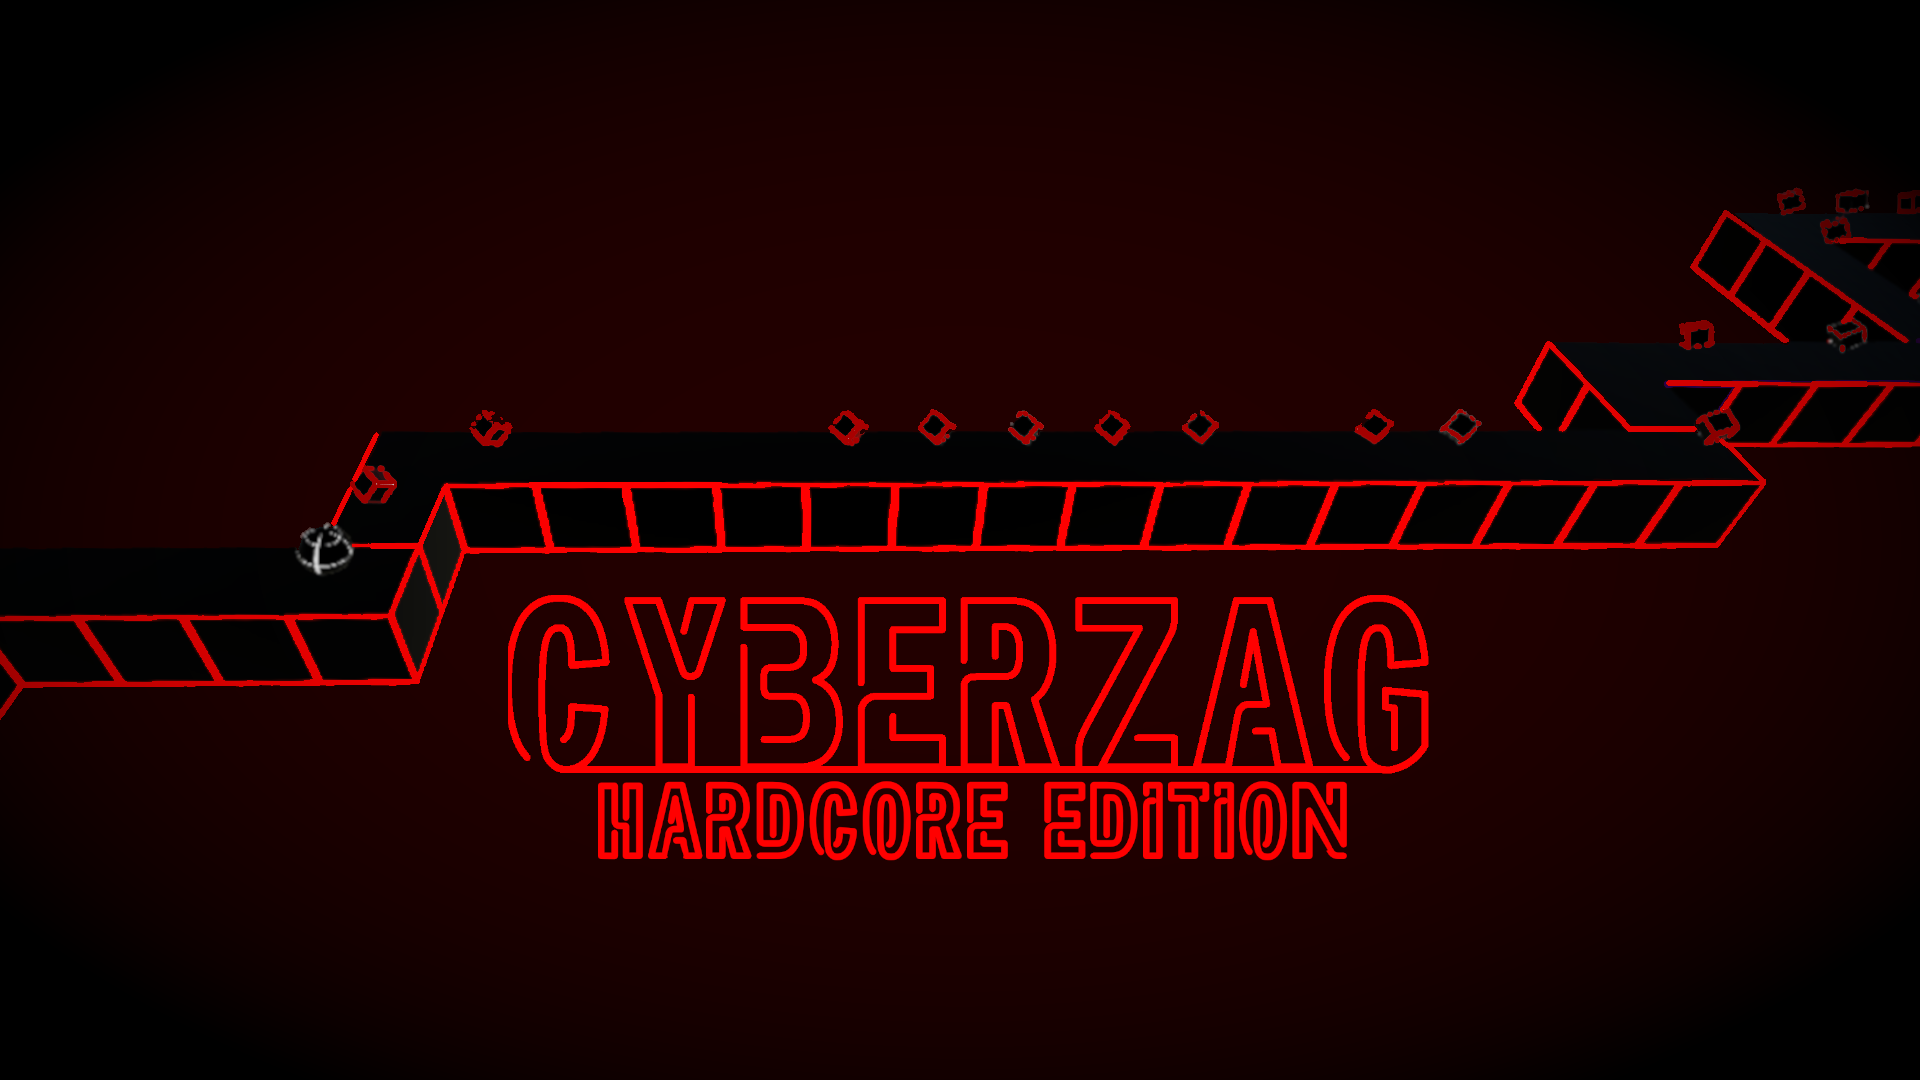 CyberZag Hardcore Edition